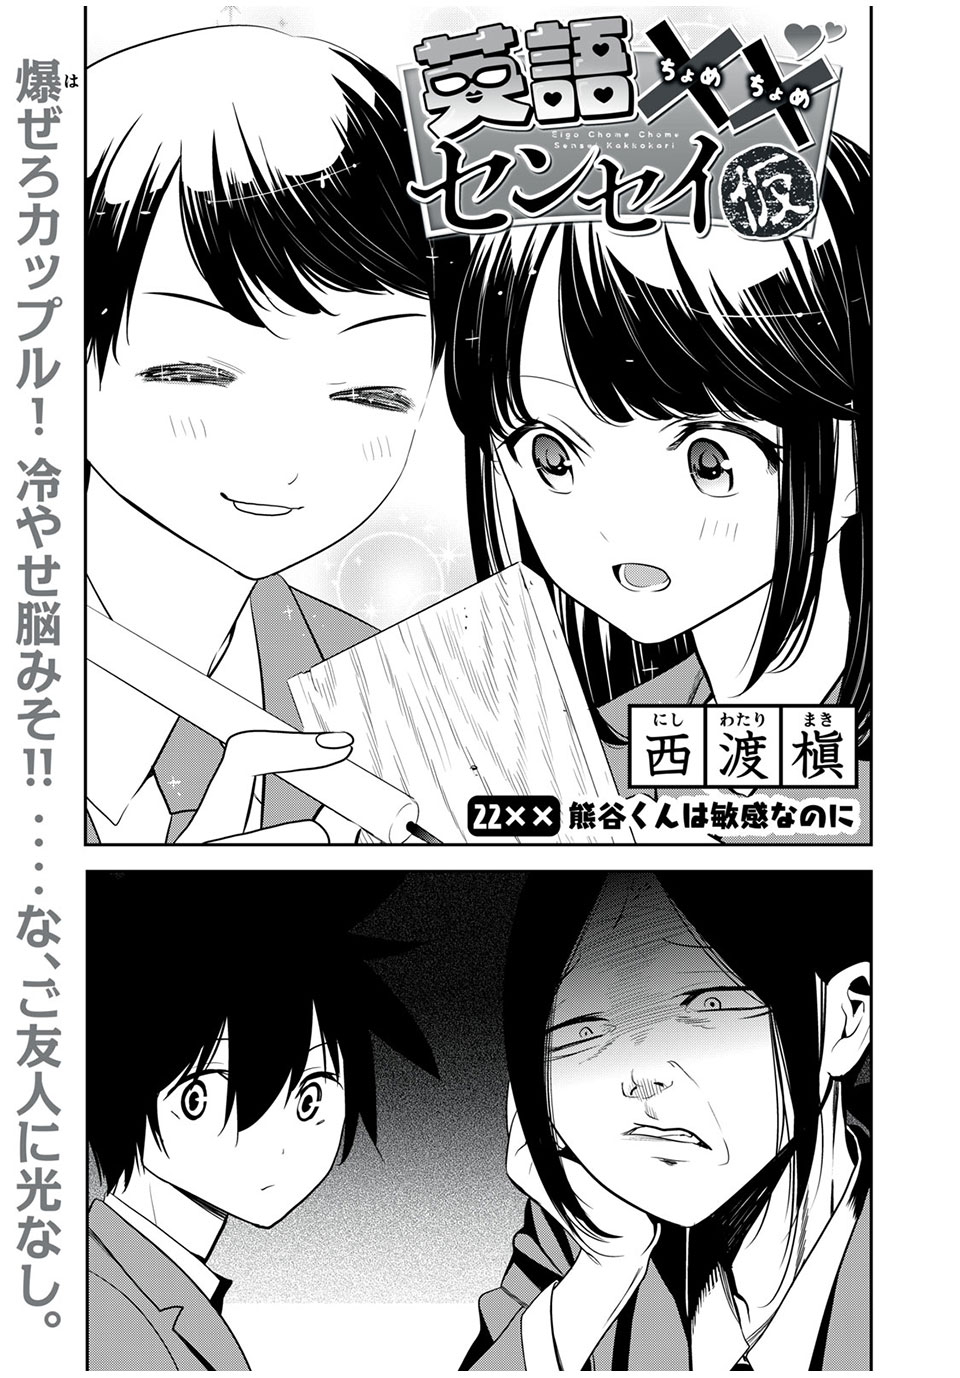 Eigo ×× Sensei - Chapter 22 - Page 1